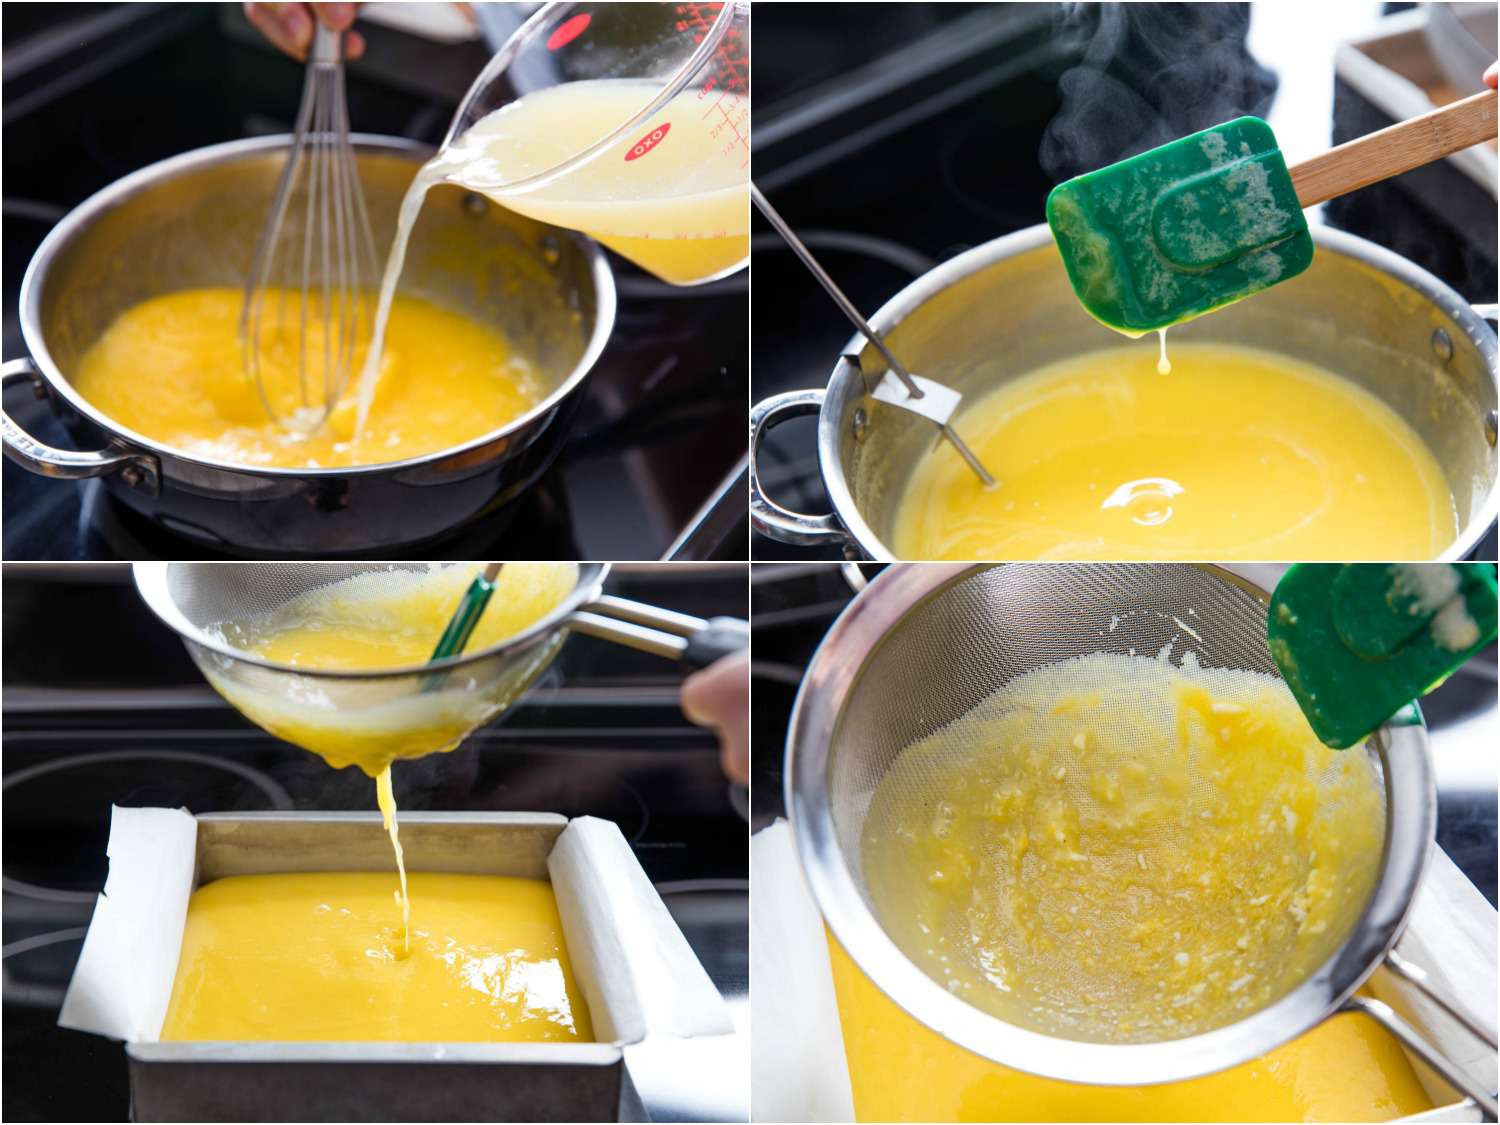 照片拼贴展示了将柠檬汁搅拌到鸡蛋和糖的混合物中，在炉子上烹饪混合物，然后滤入羊皮纸内衬的烤盘中制作柠檬棒。